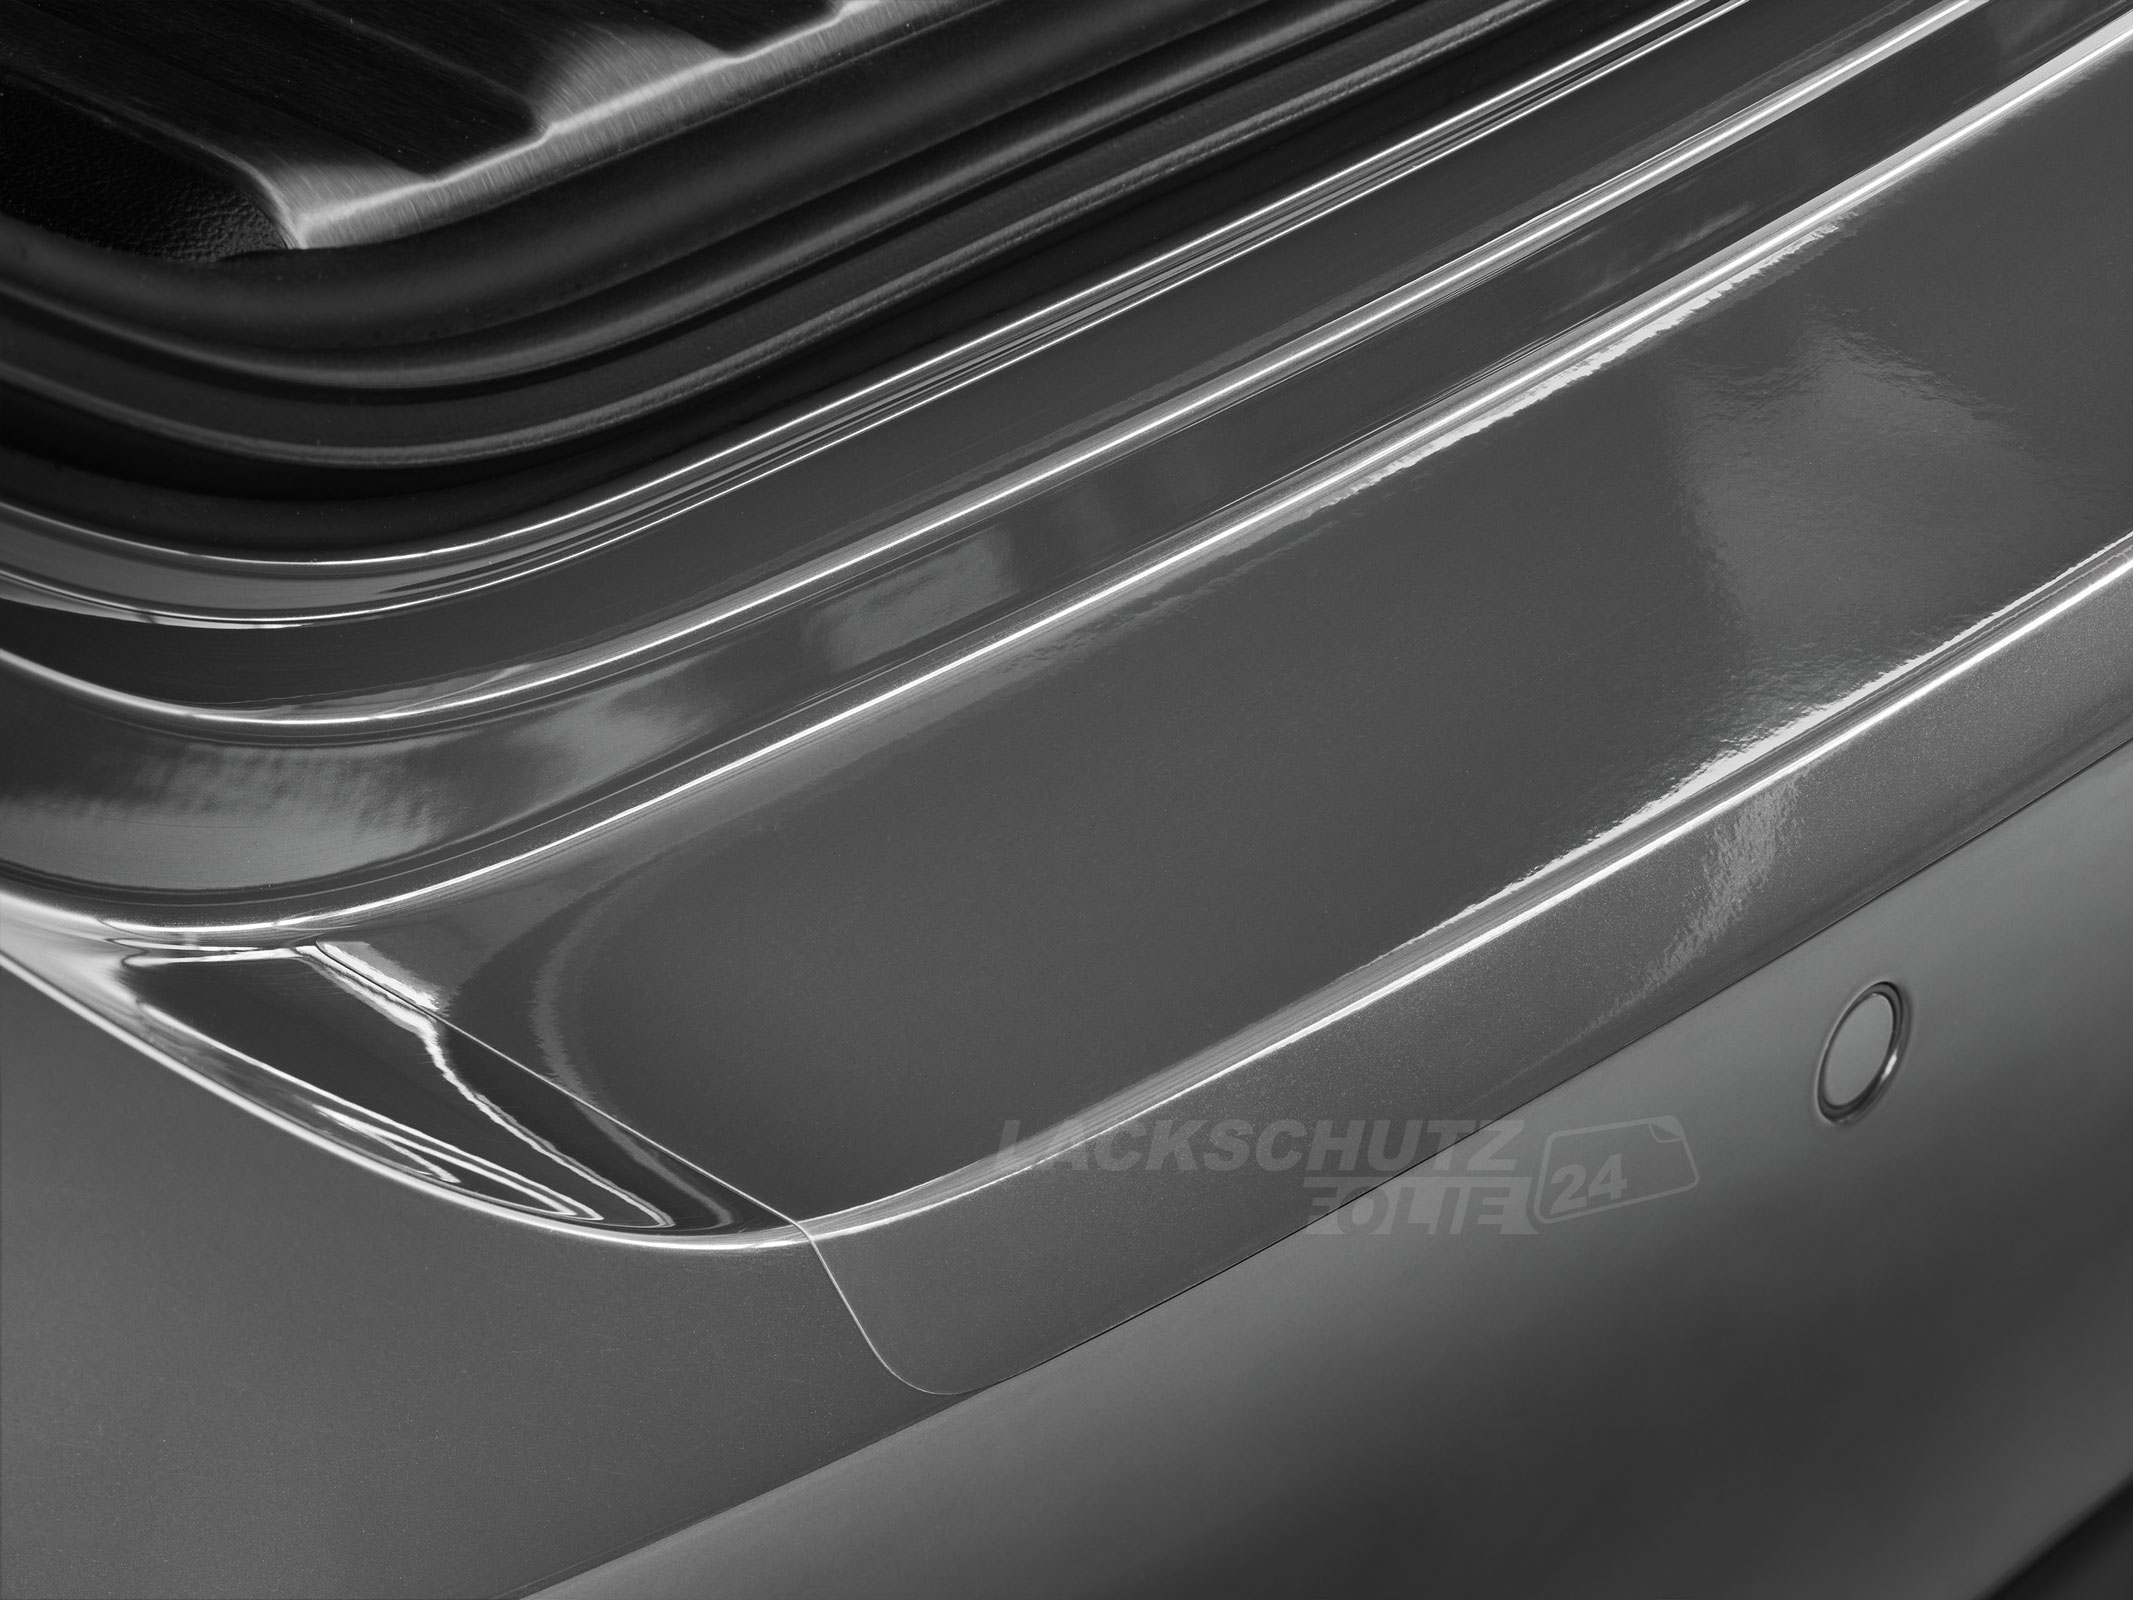 Ladekantenschutzfolie - Transparent Glatt Hochglänzend 240 µm stark für Suzuki Swift (V) Typ FZ/NZ, BJ 2010-02/2017